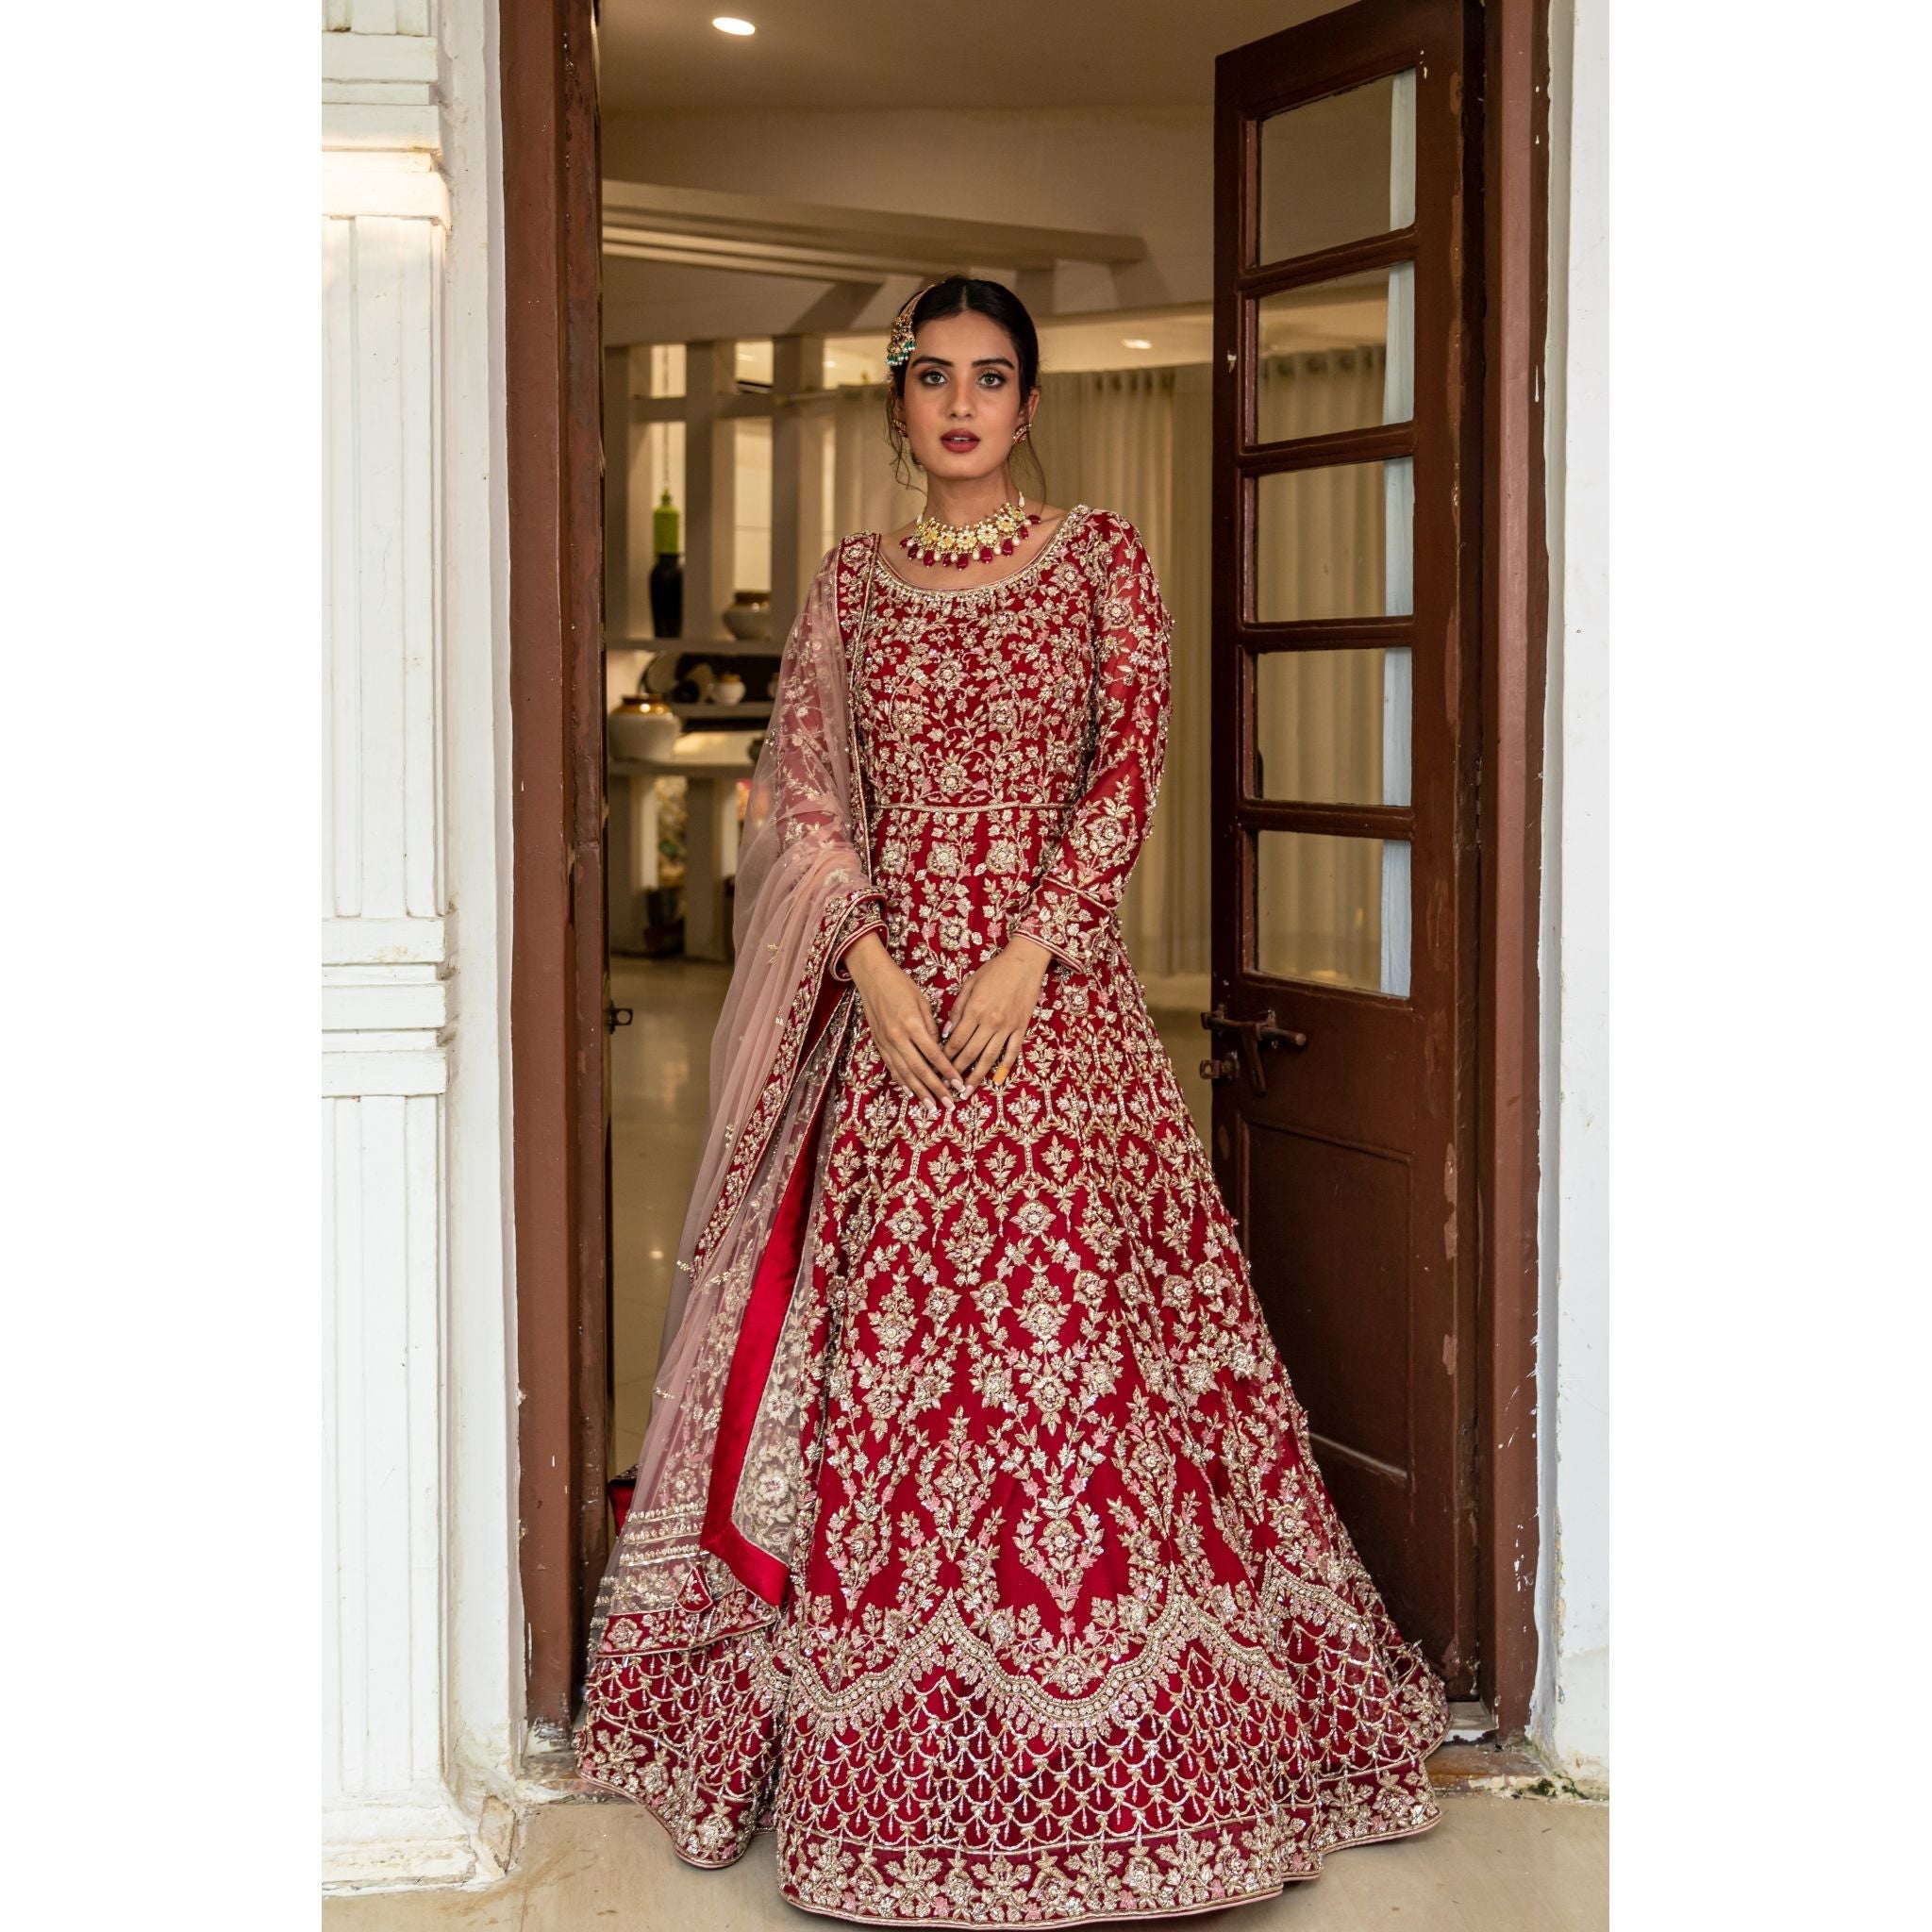 Red And Gold Bridal Anarkali Set - Indian Designer Bridal Wedding Outfit